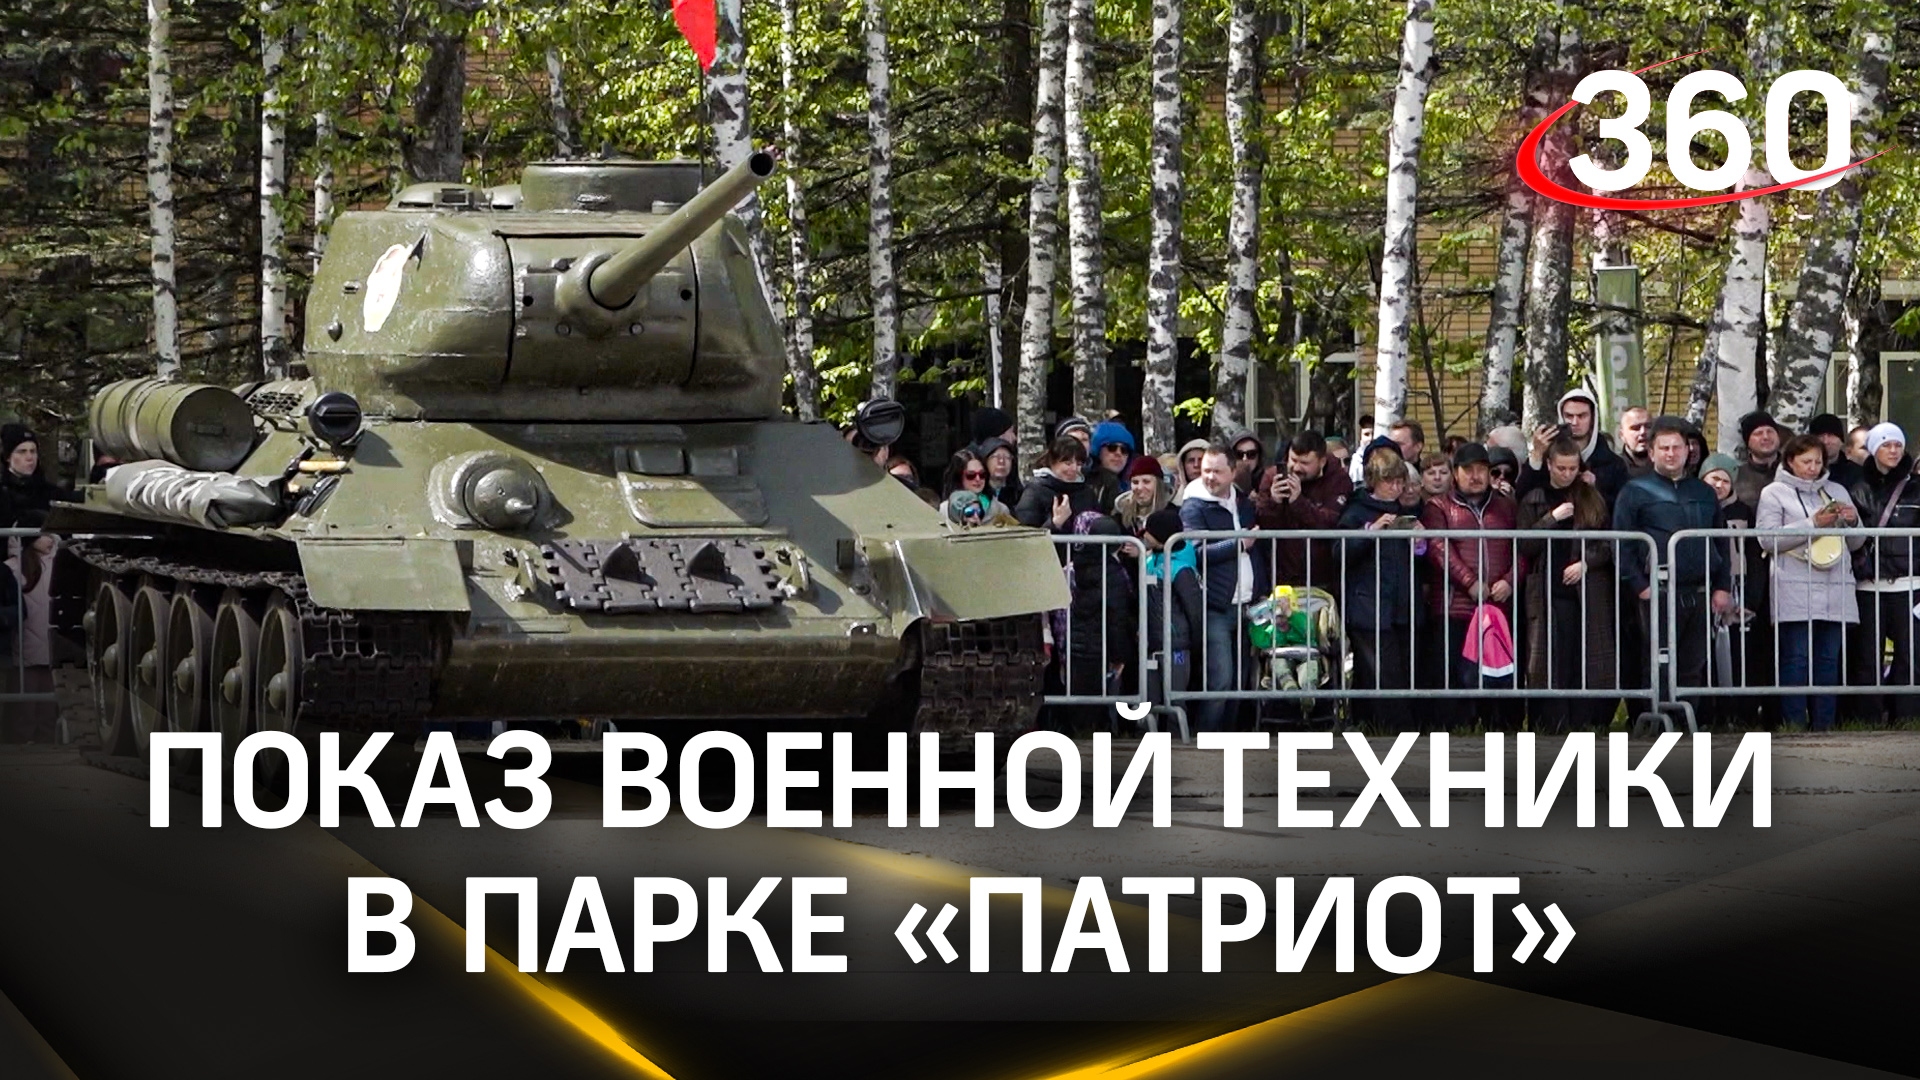 Динамический показ военной техники прошёл в парке «Патриот»